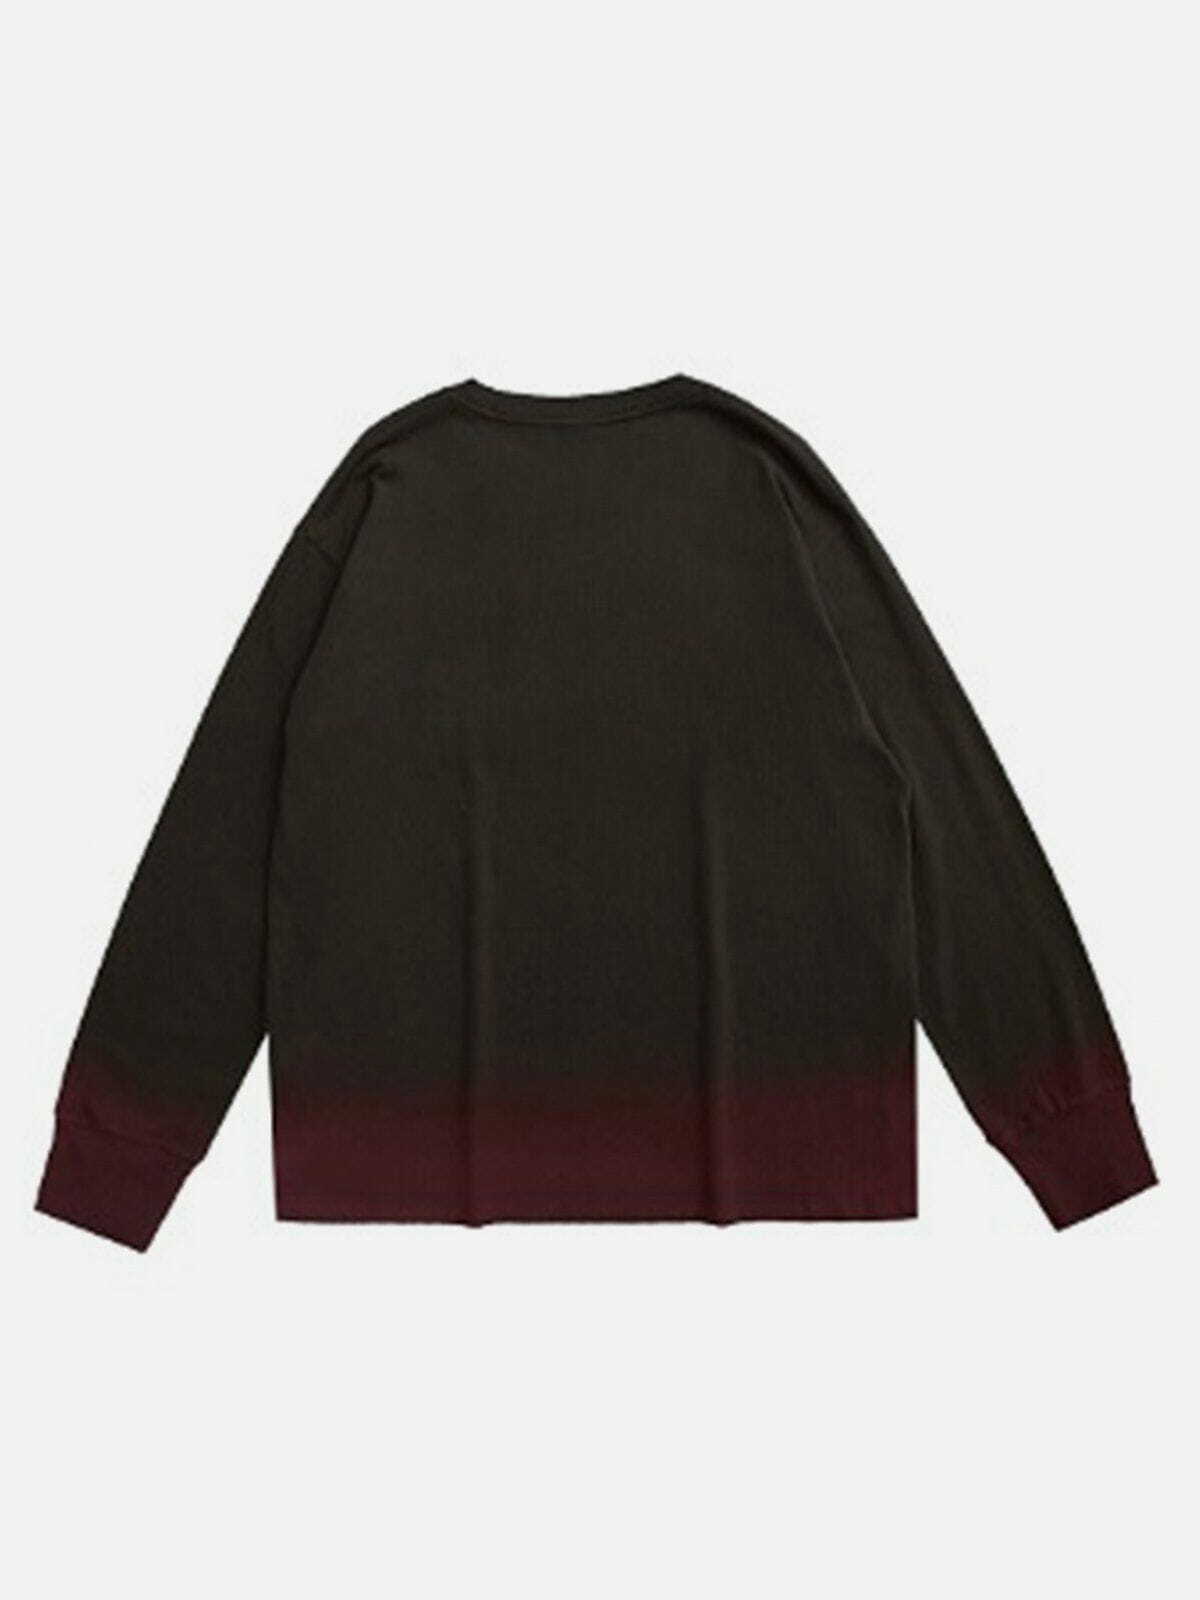 blooming gradient sweatshirt edgy streetwear essential 1068